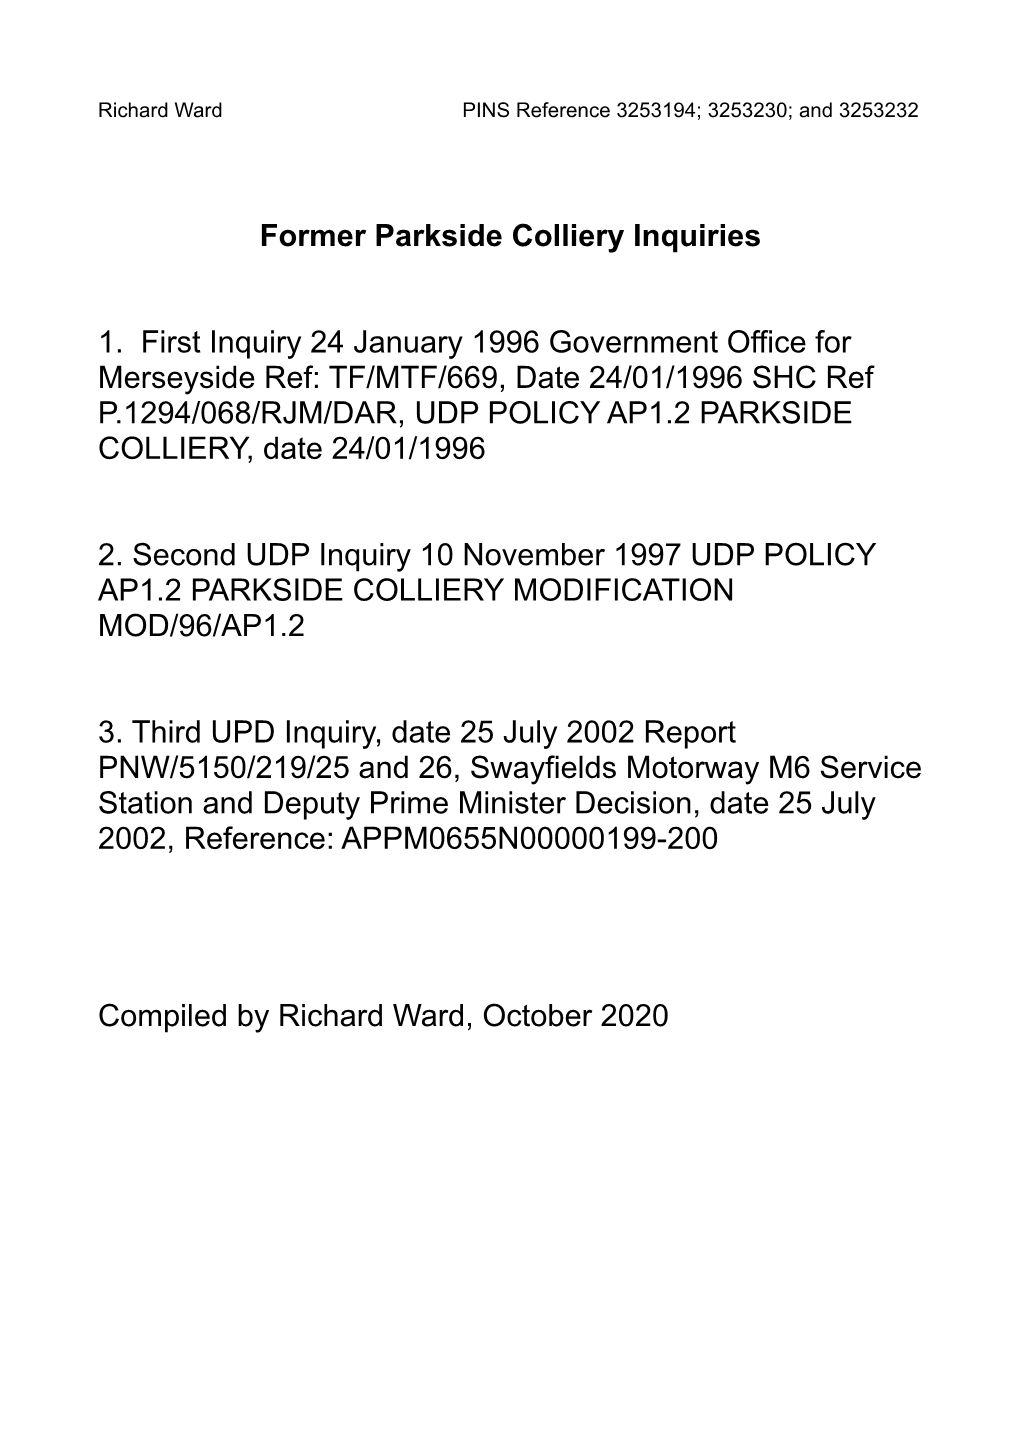 2002 Inquiries